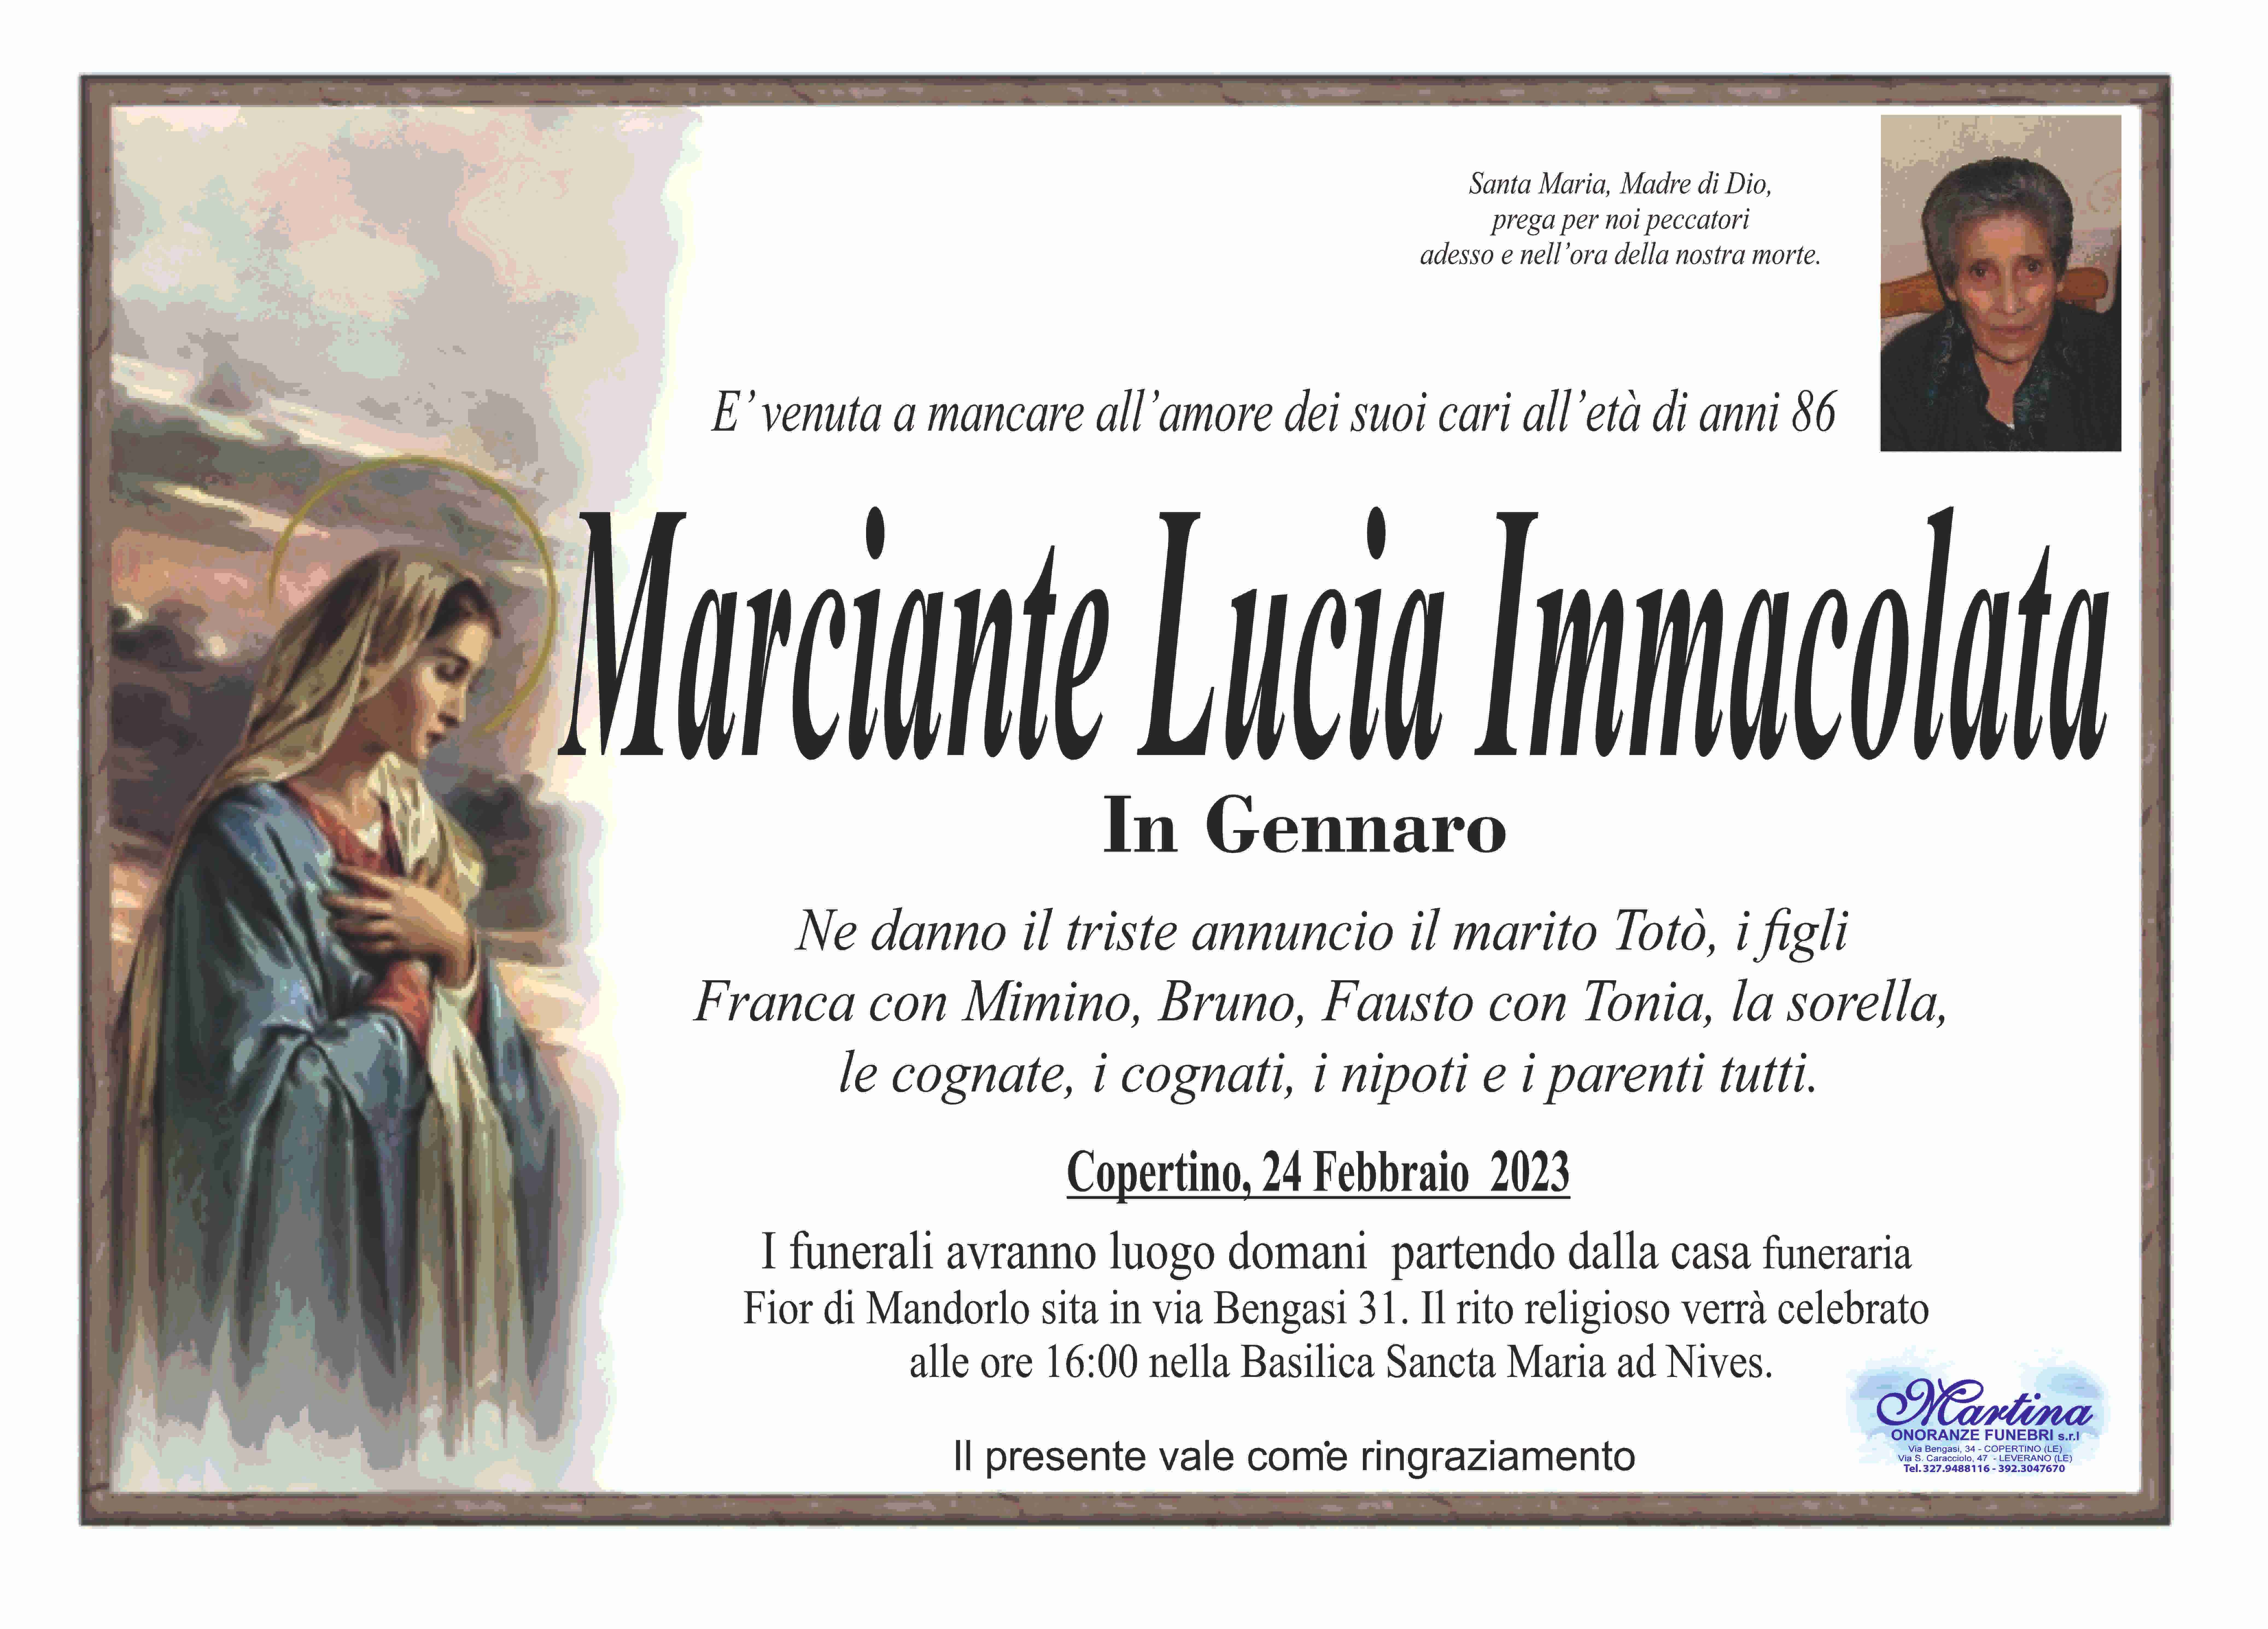 Lucia Immacolata Marciante